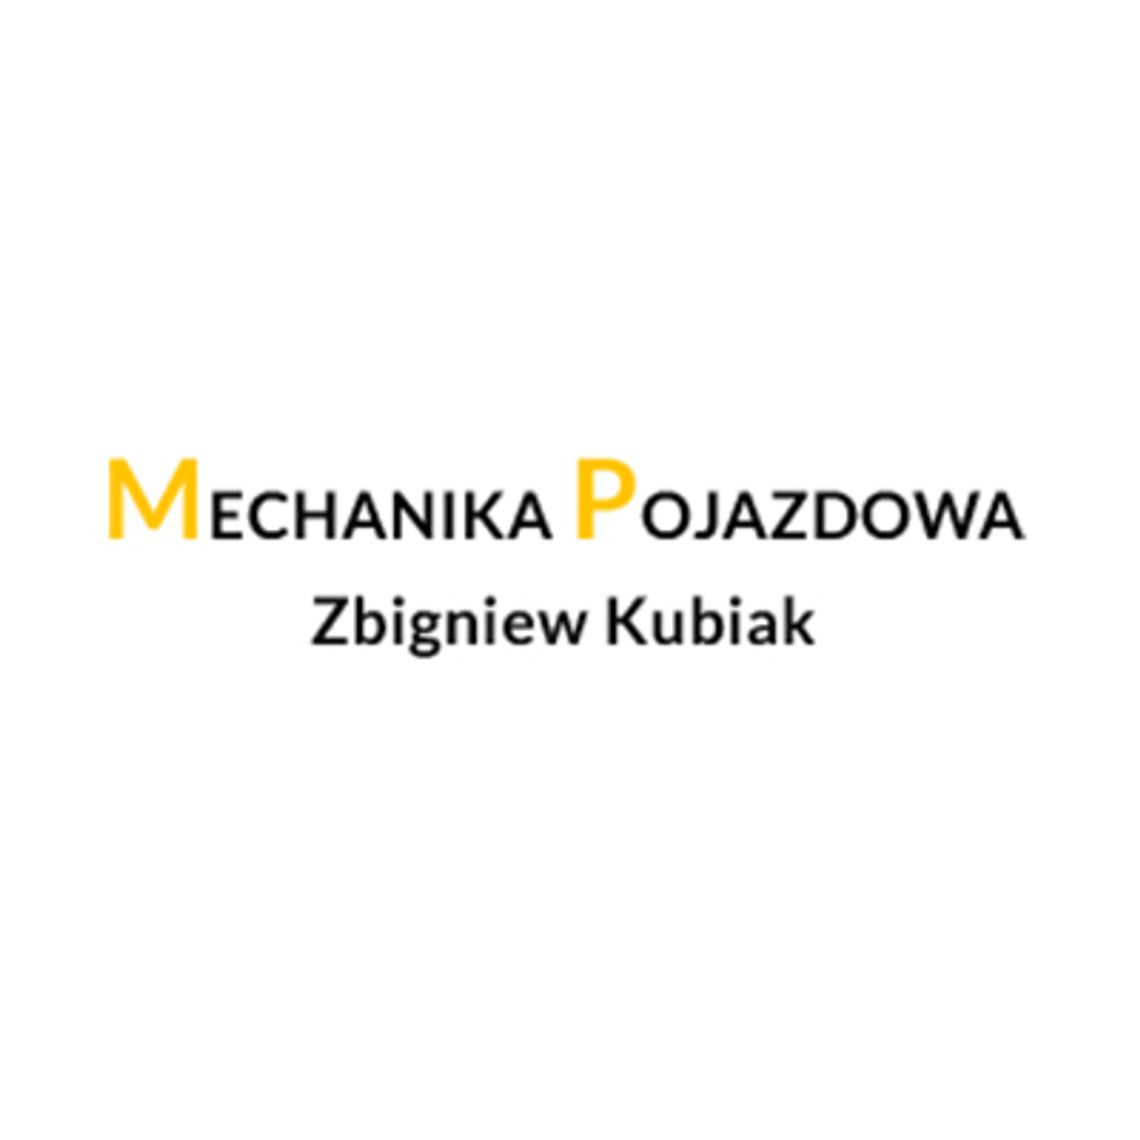 Serwis, naprawa i diagnostyka ciągników rolniczych - Mechanika Pojazdowa Zbigniew Kubiak